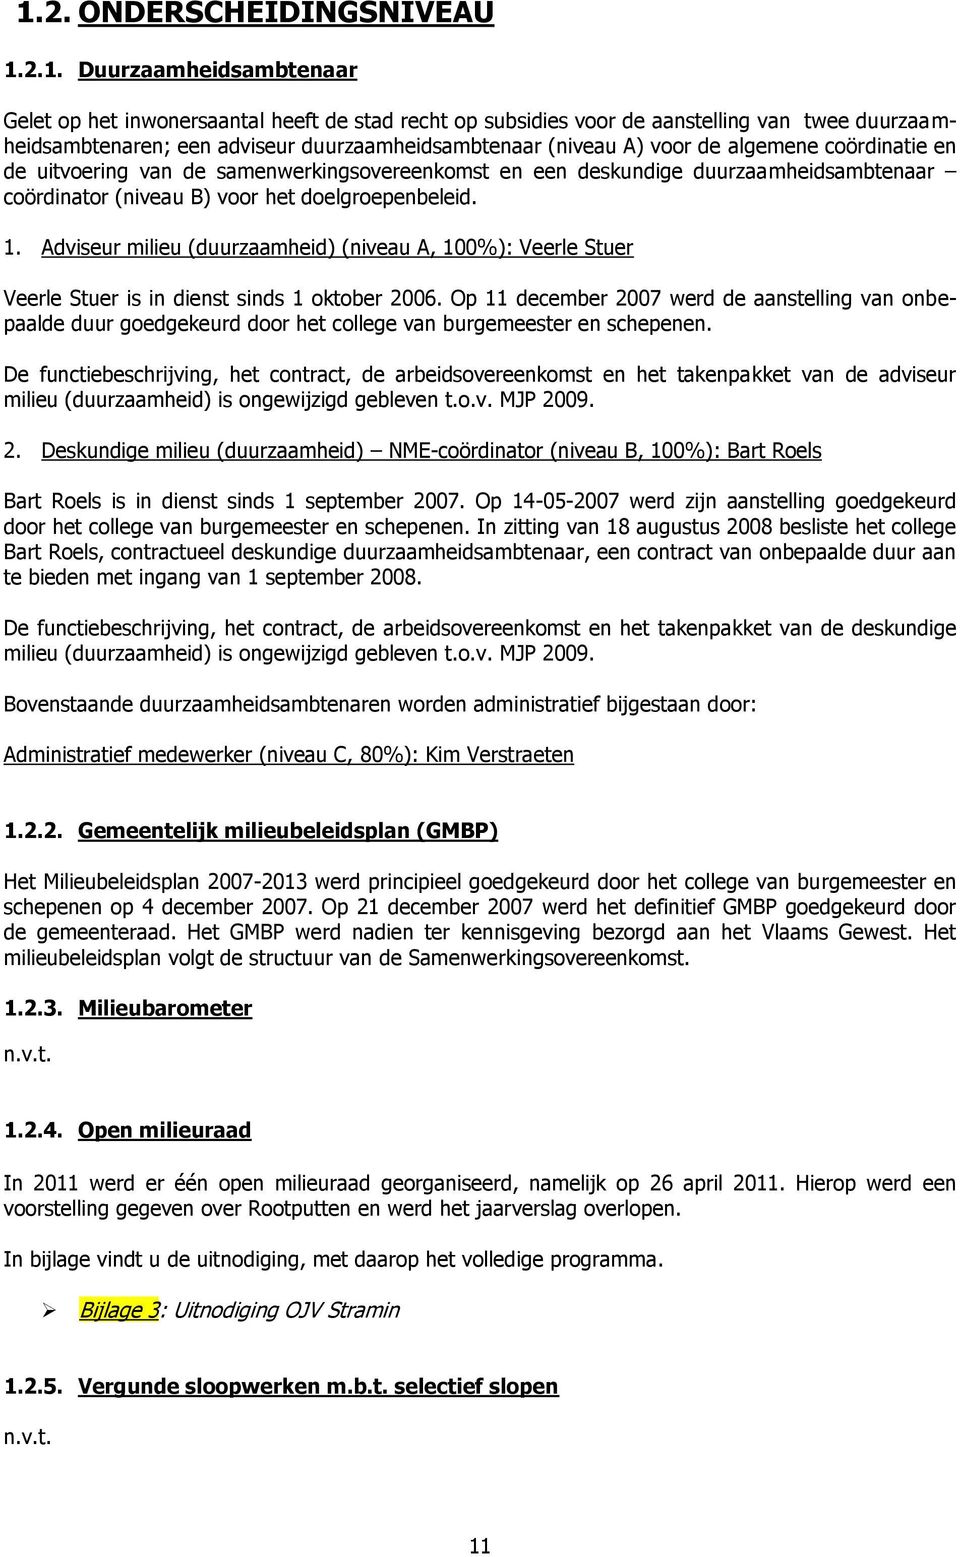 doelgroepenbeleid. 1. Adviseur milieu (duurzaamheid) (niveau A, 100%): Veerle Stuer Veerle Stuer is in dienst sinds 1 oktober 2006.